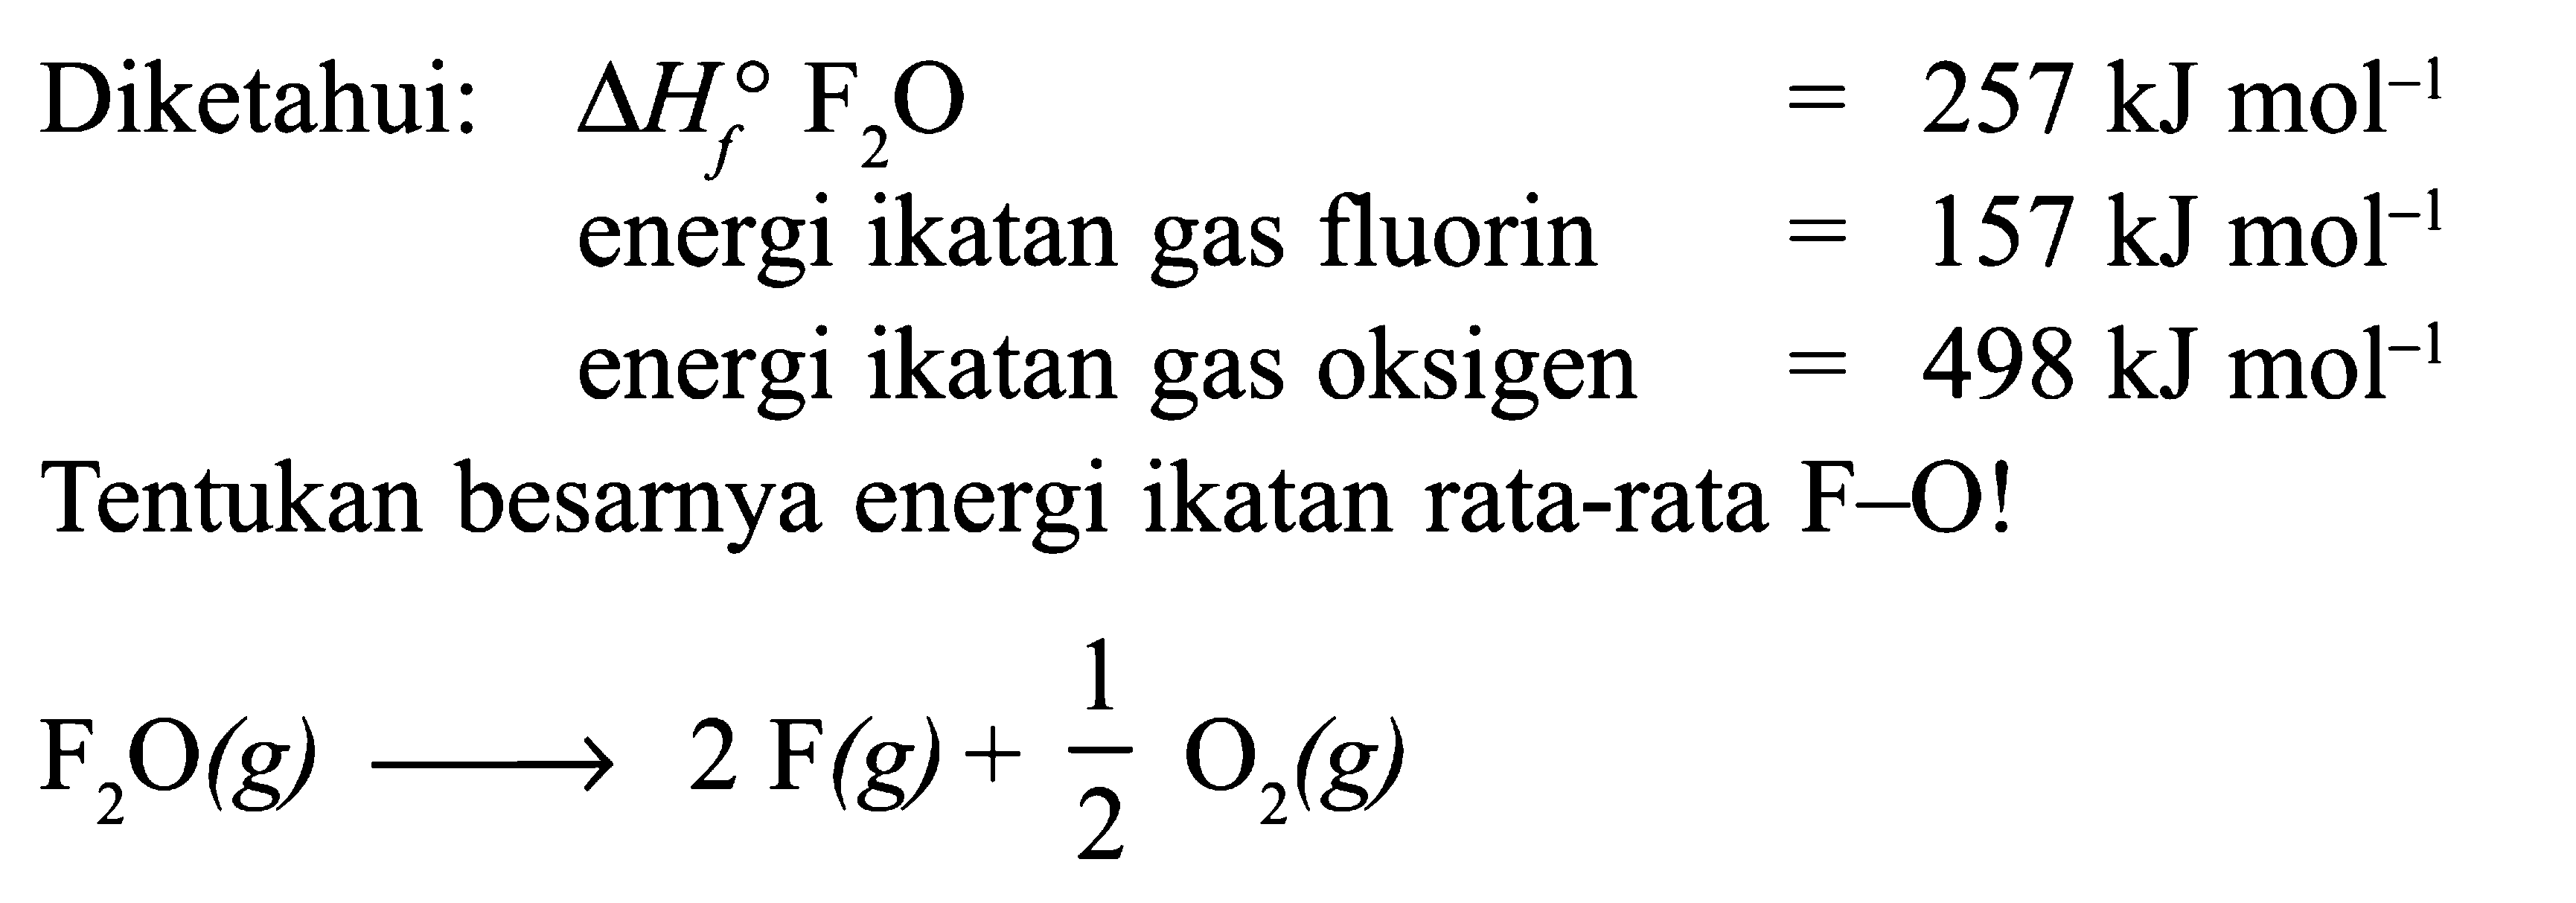 Diketahui: delta Hf F2O = 257 kJ mol^(-1) energi ikatan gas fluorin = 157 kJ mol^(-1) energi ikatan gas oksigen = 498 kJ mol^(-1) Tentukan besarnya energi ikatan rata-rata F-O! F2O (g) -> 2 F(g) + 1/2 O2 (g)